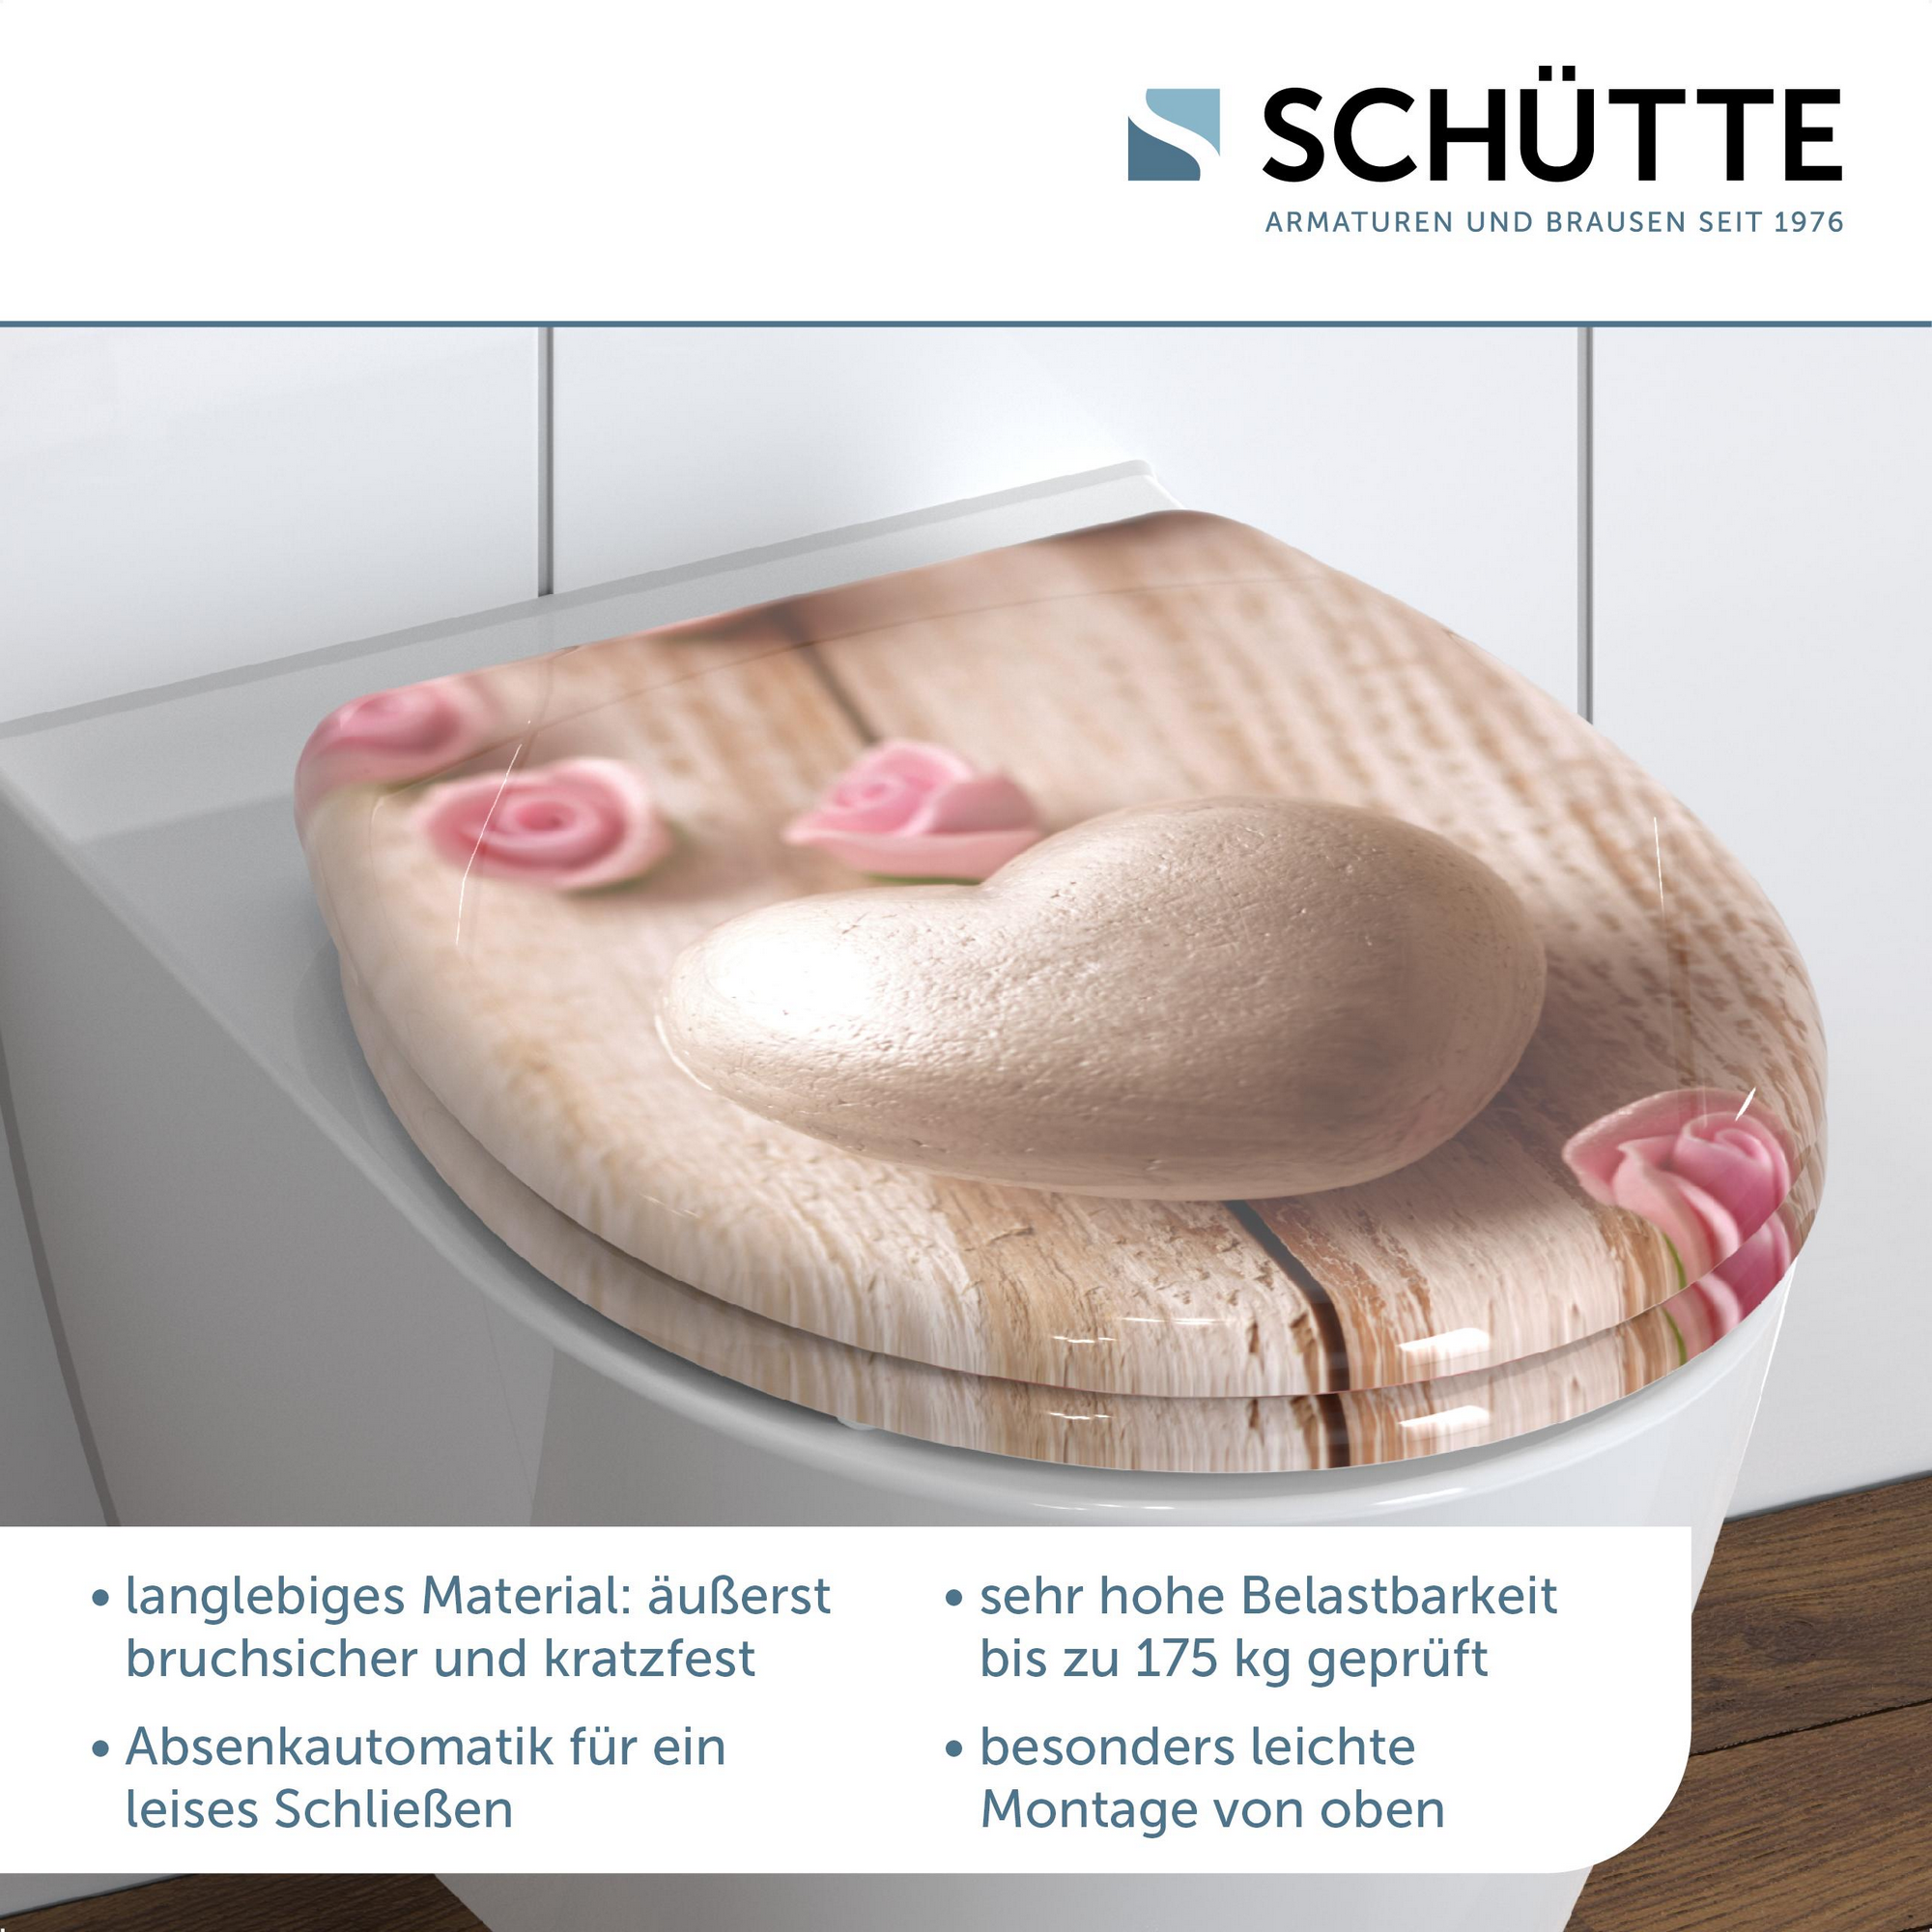 WC-Sitz 'Romantic' mit Absenkautomatik rosa 37,5 x 45 cm + product picture